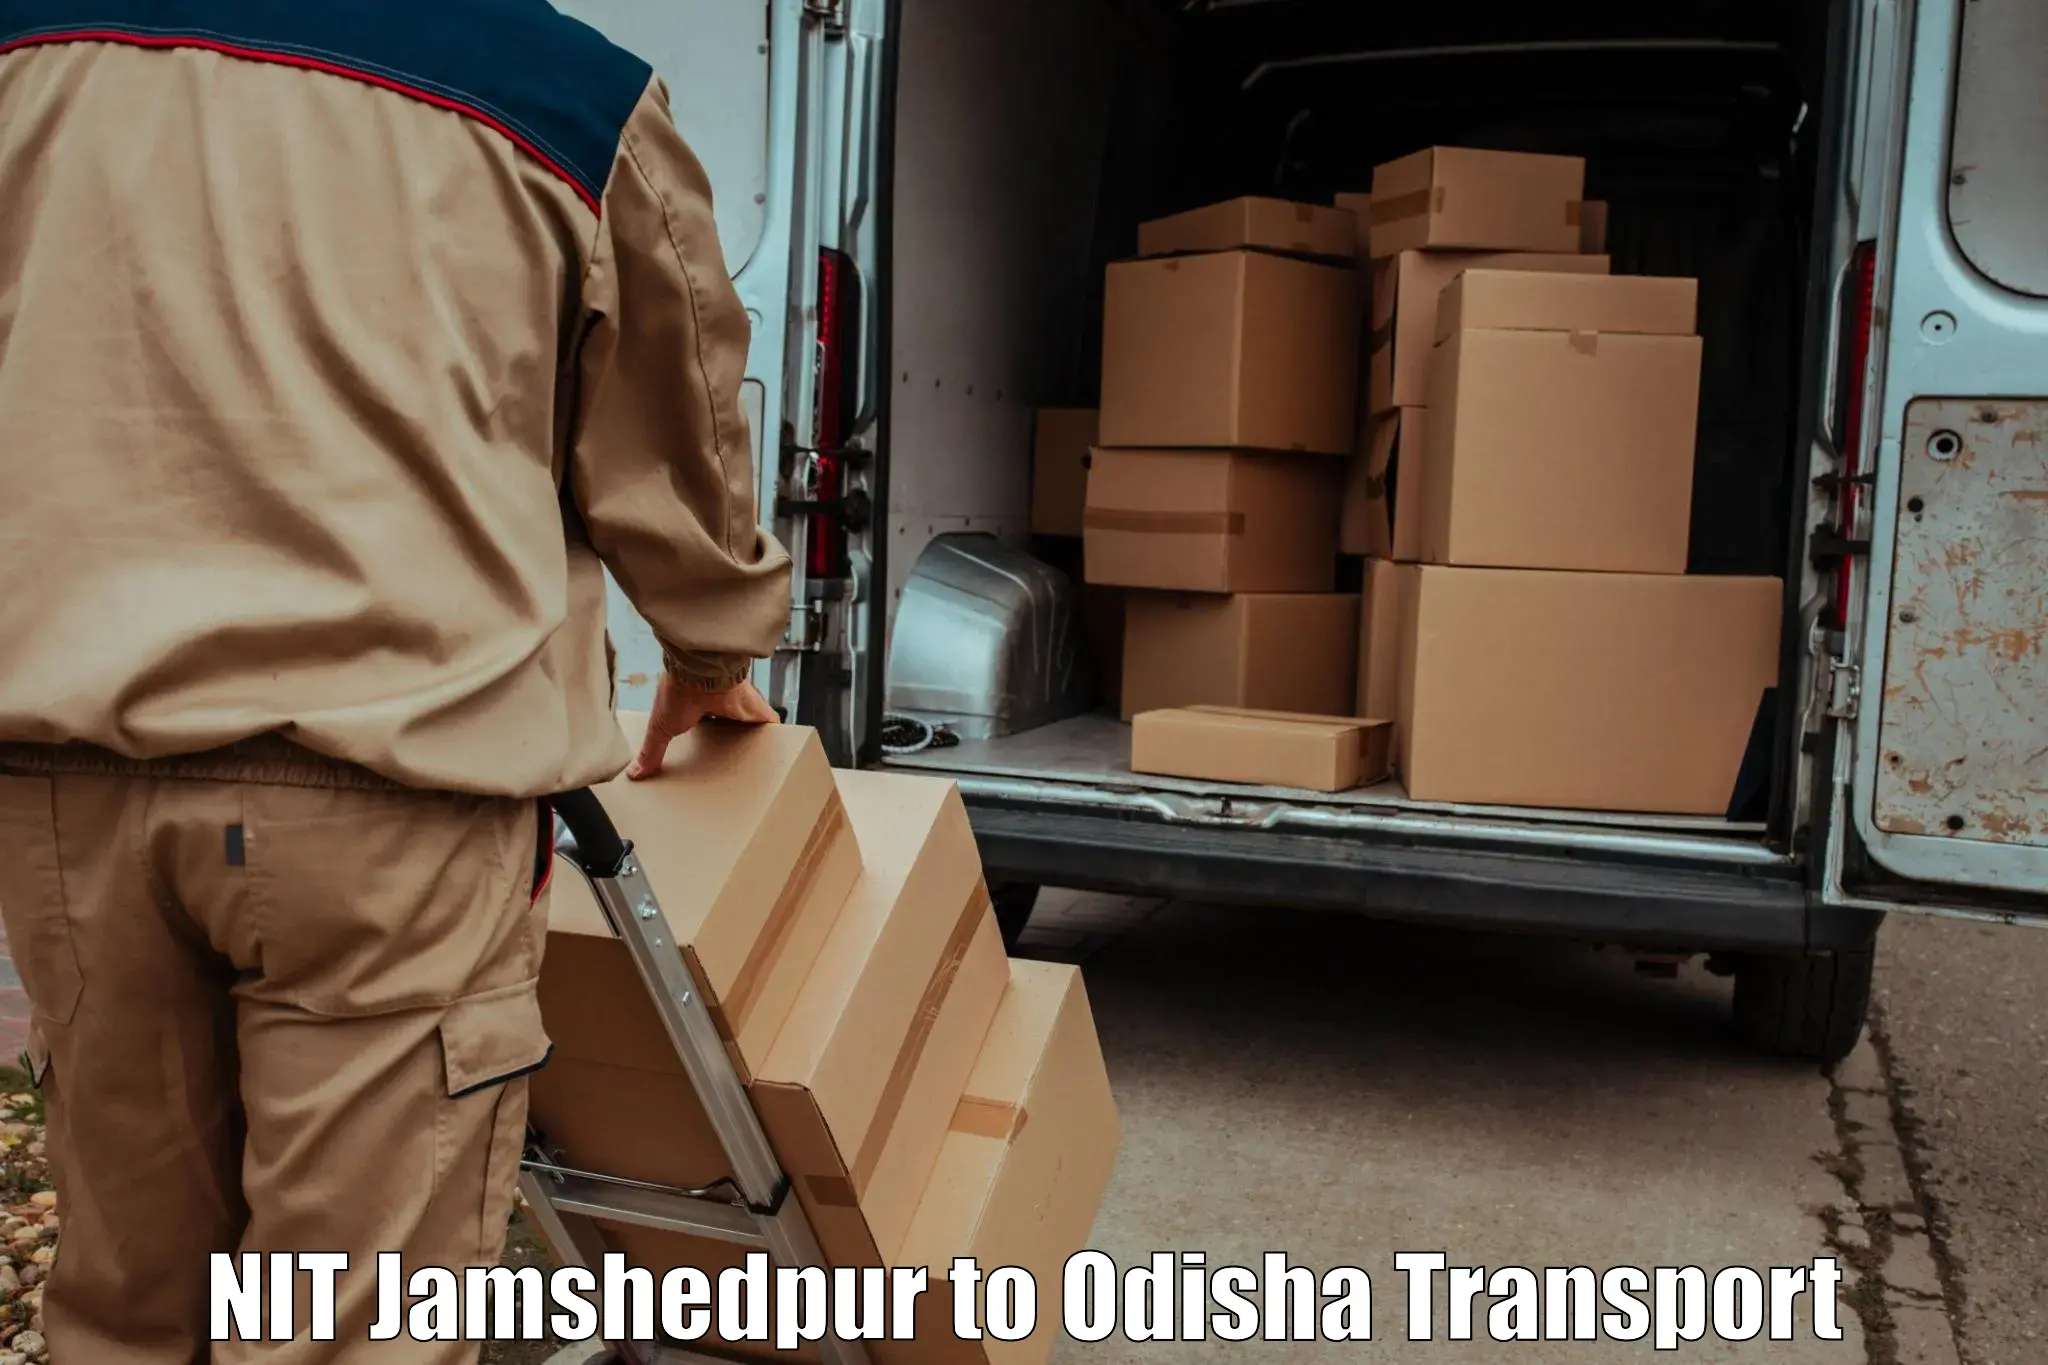 Express transport services NIT Jamshedpur to Kalimela